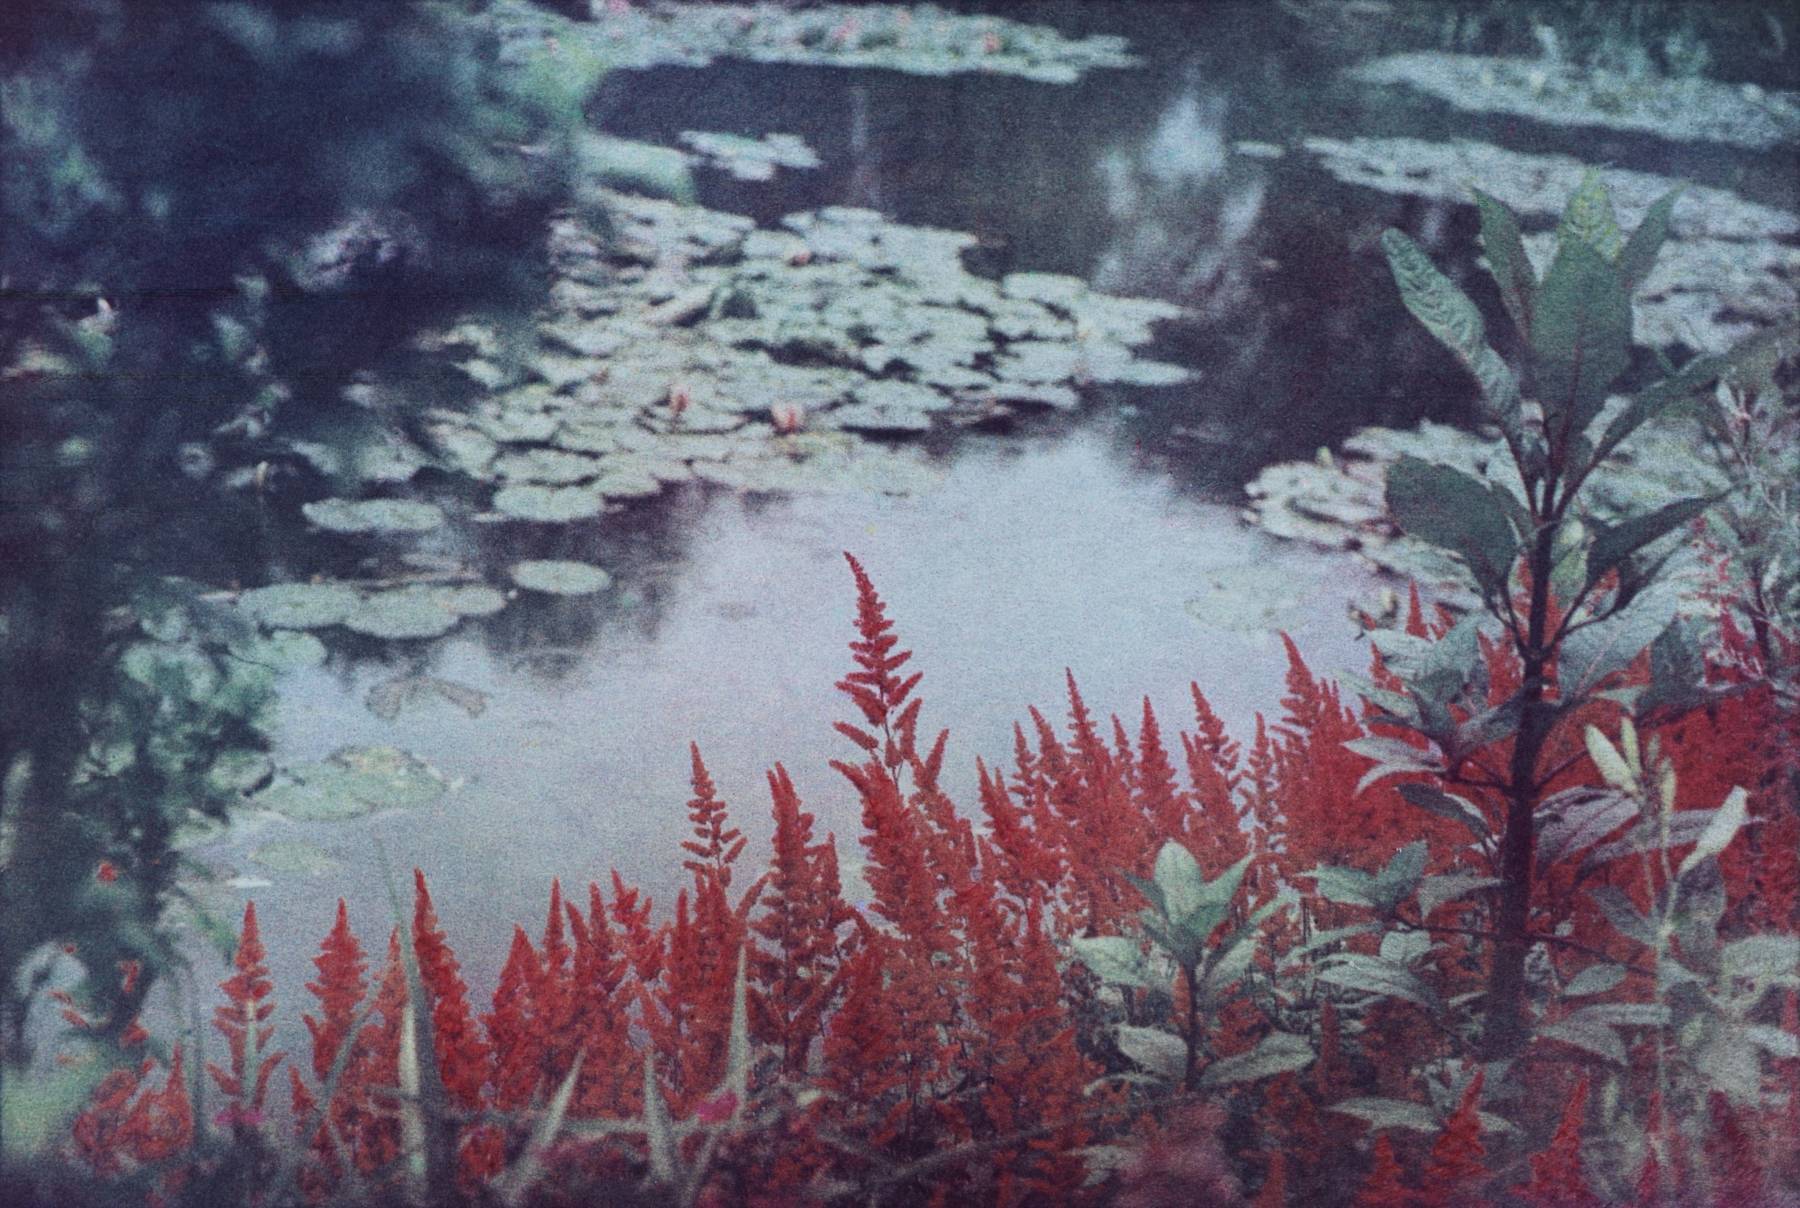 Bernard Plossu, Chez Monet, le jardin de l’autre côté, Giverny